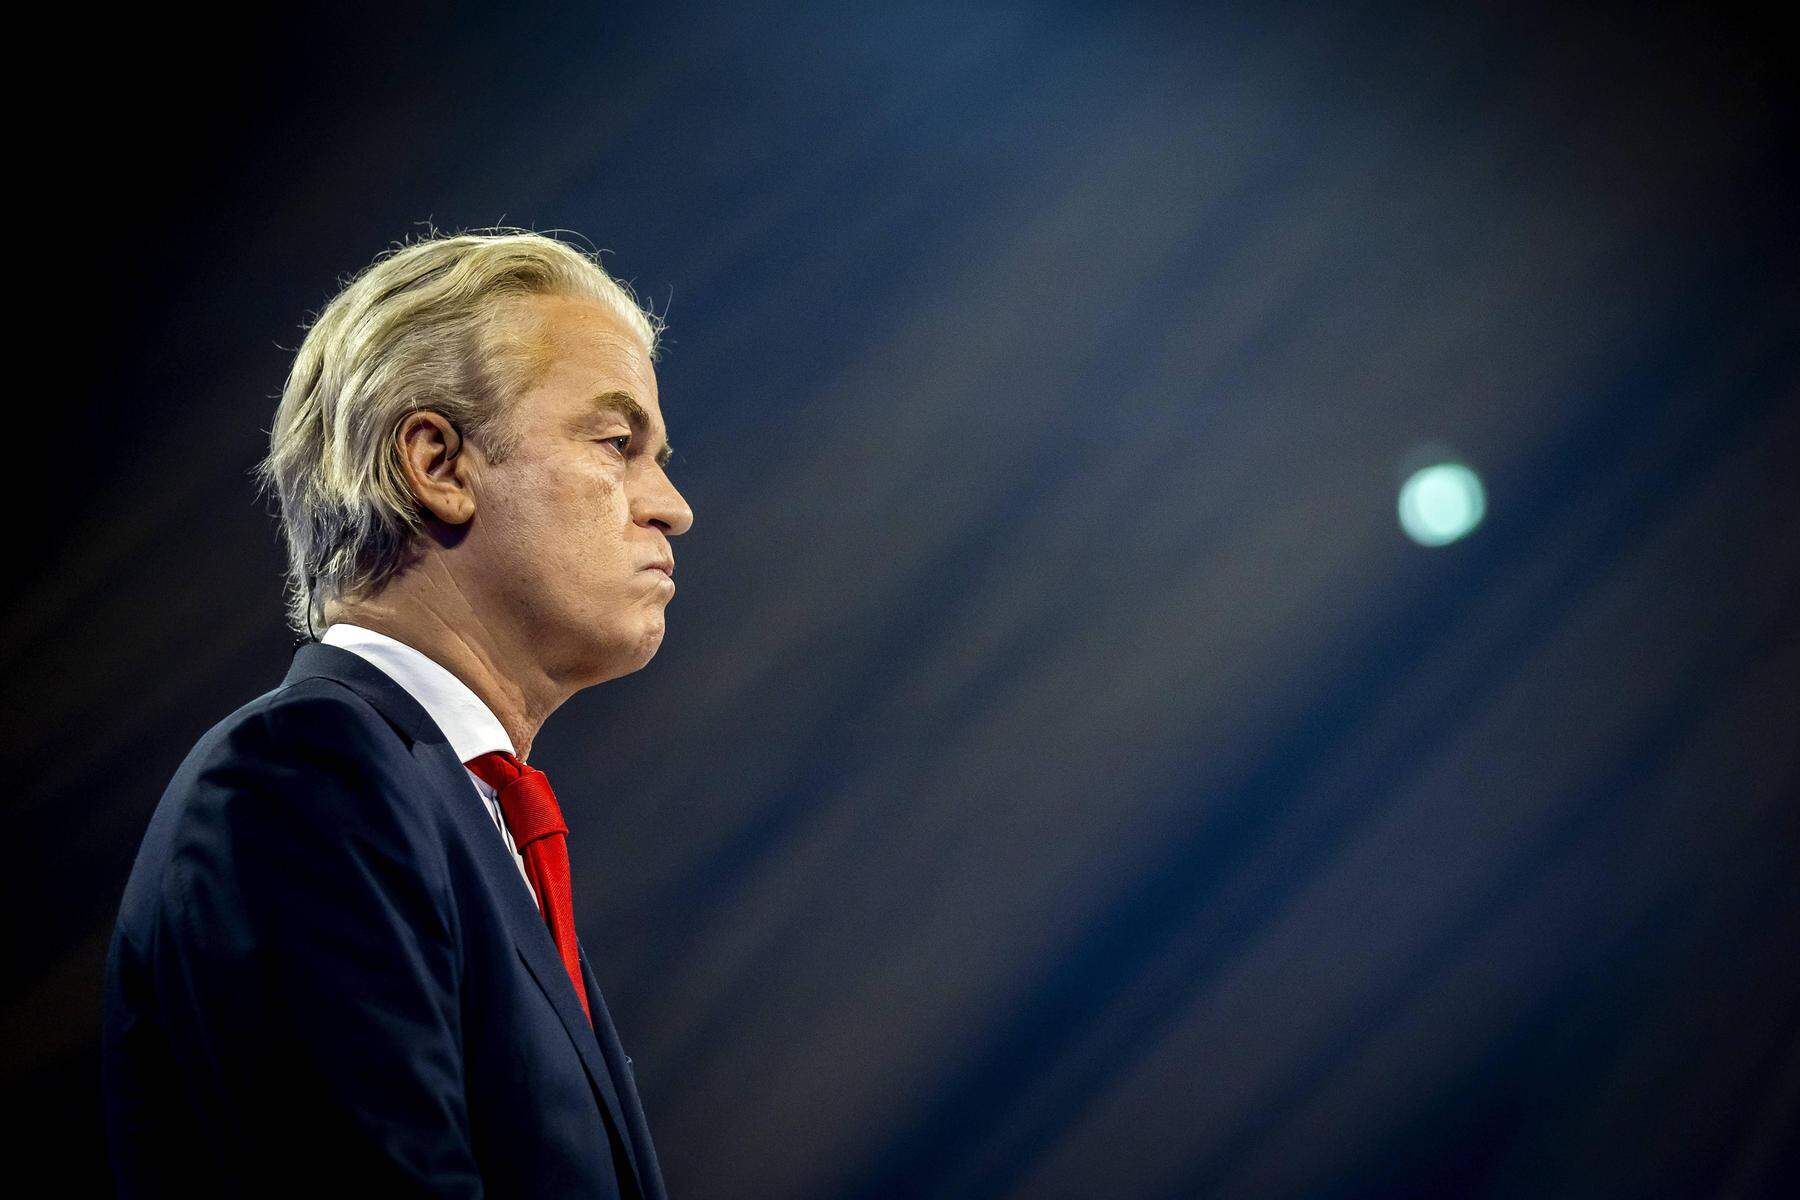 Rechtspopulistischer Wahlsieger: Niederlande: Geert Wilders scheitert an Koalitionsbildung und wird nicht Premier